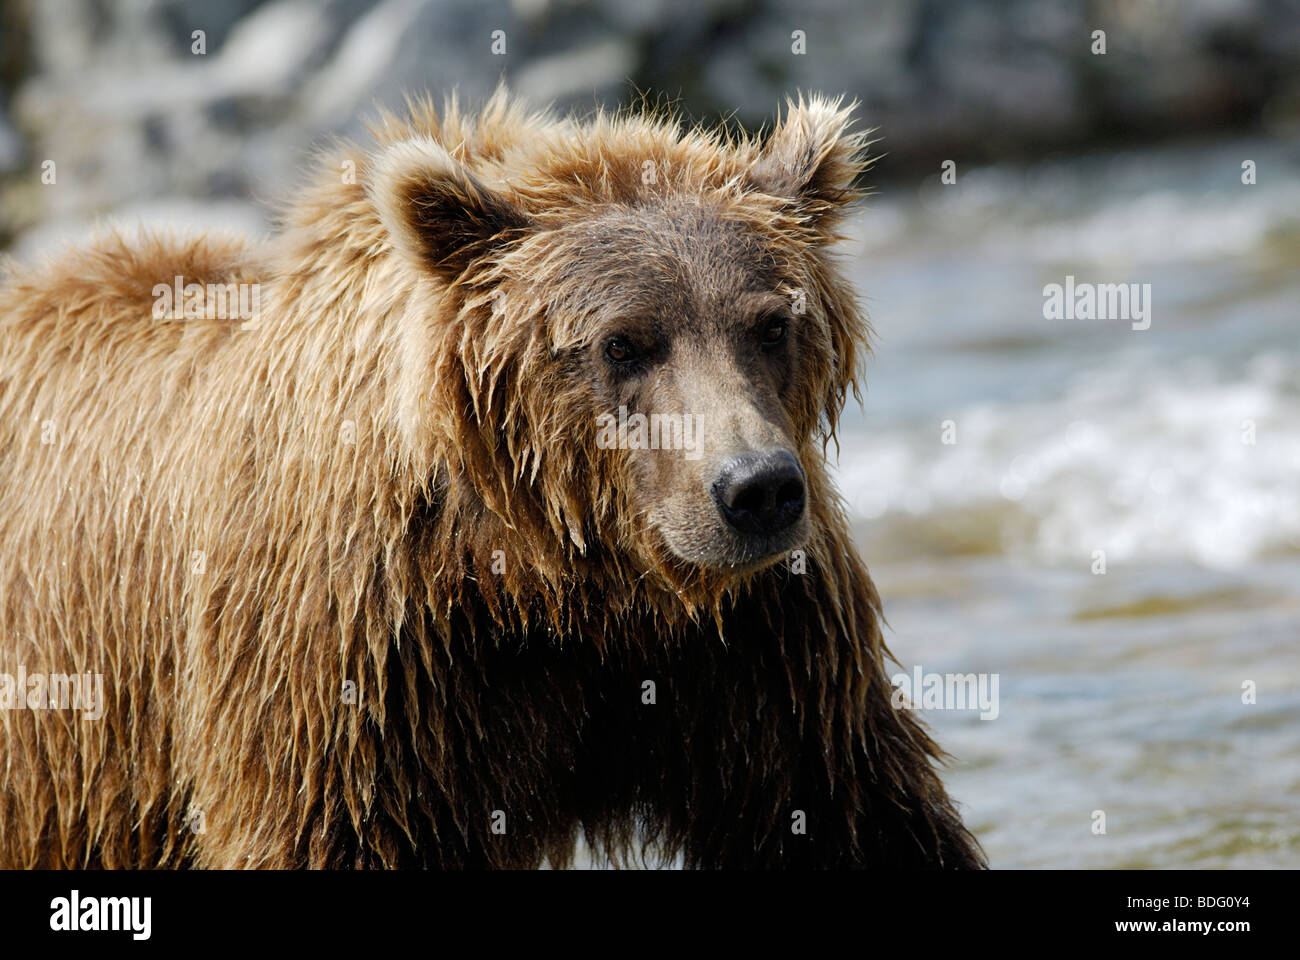 Oso pardo o Grizzly Bear, Ursus arctos horribilis Foto de stock